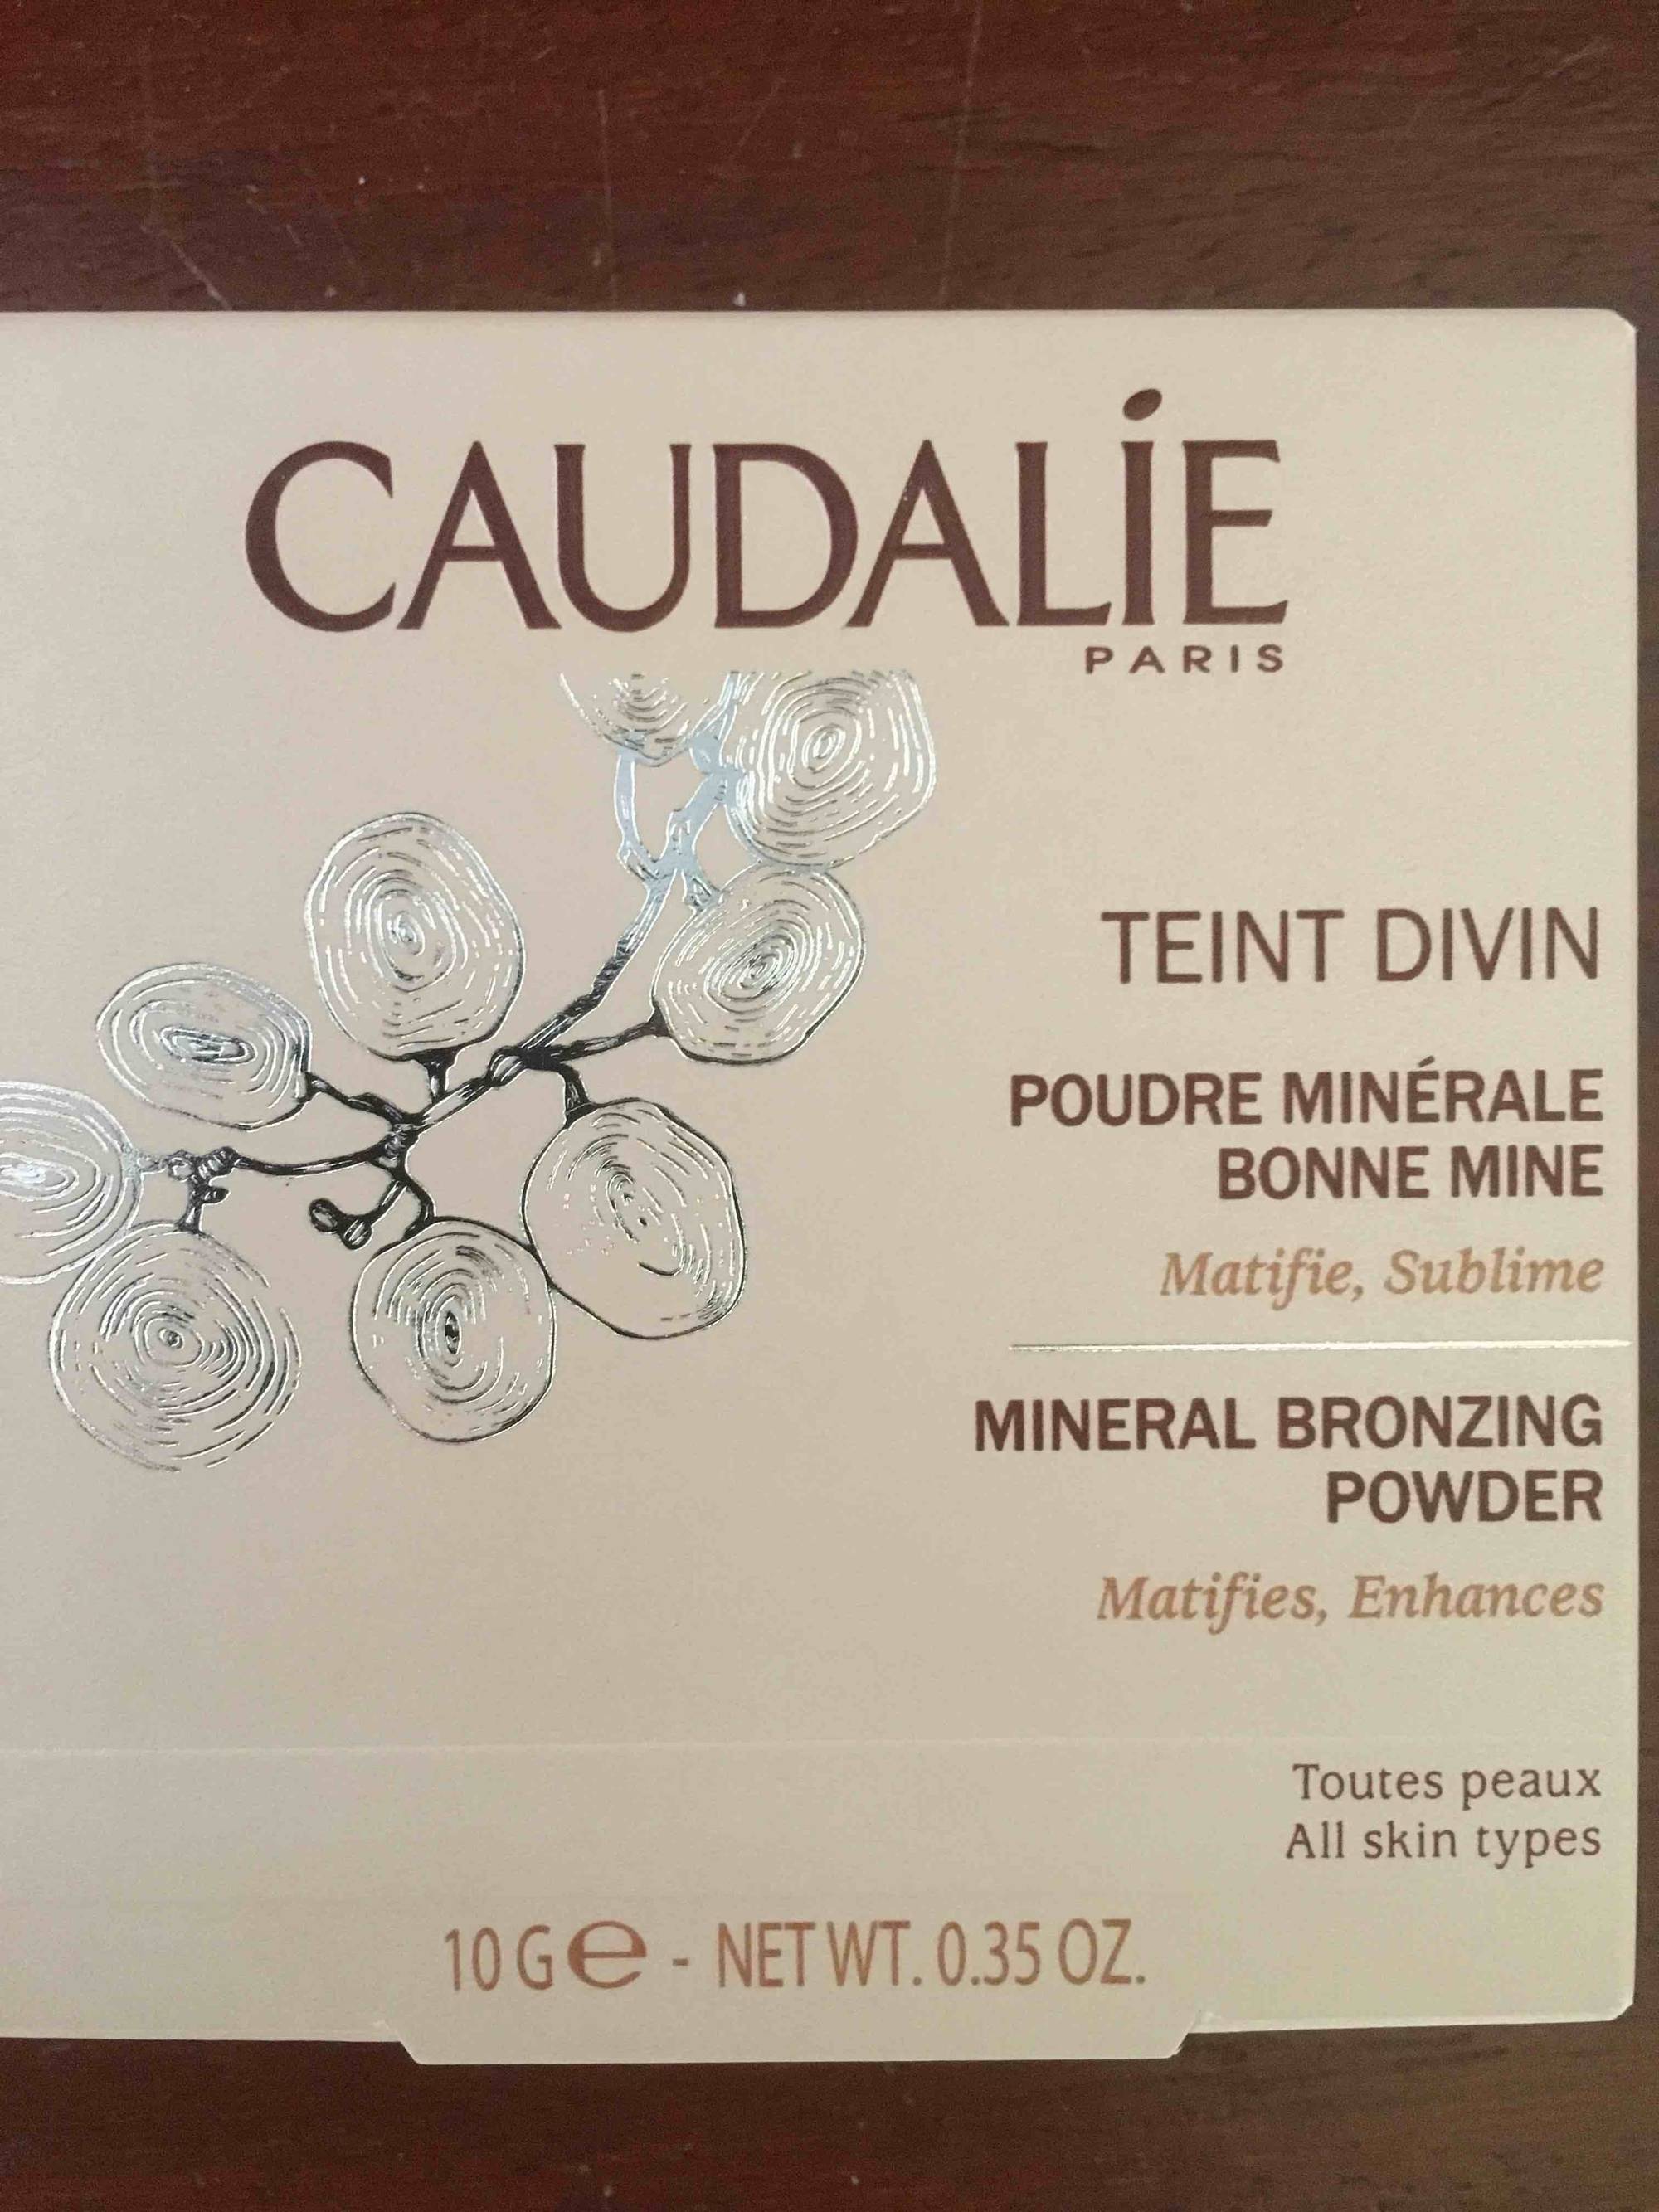 CAUDALIE - Teint divin - Poudre minérale bonne mine